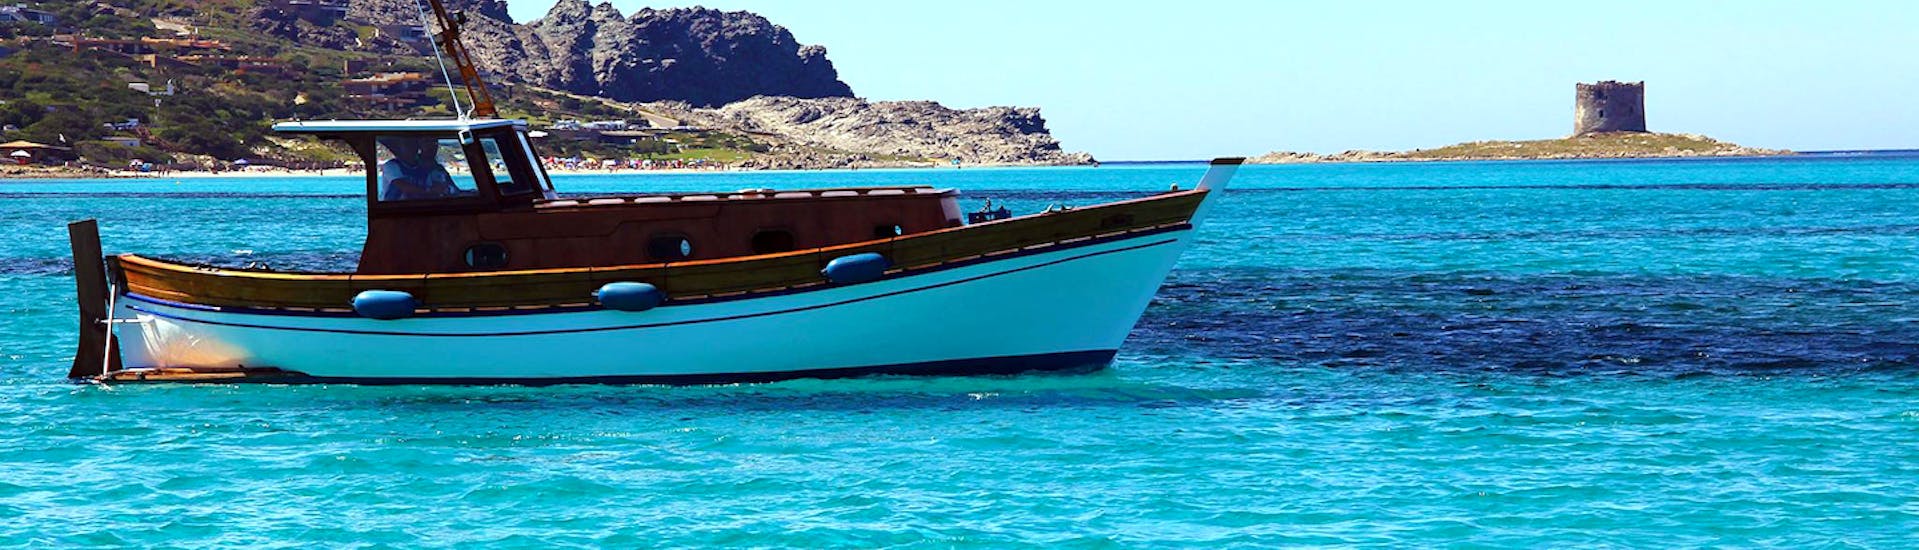 El barco de Onda Blu Asinara utilizado para la excursión en barco desde Stintino al Parque Nacional de Asinara con almuerzo está navegando por el mar.